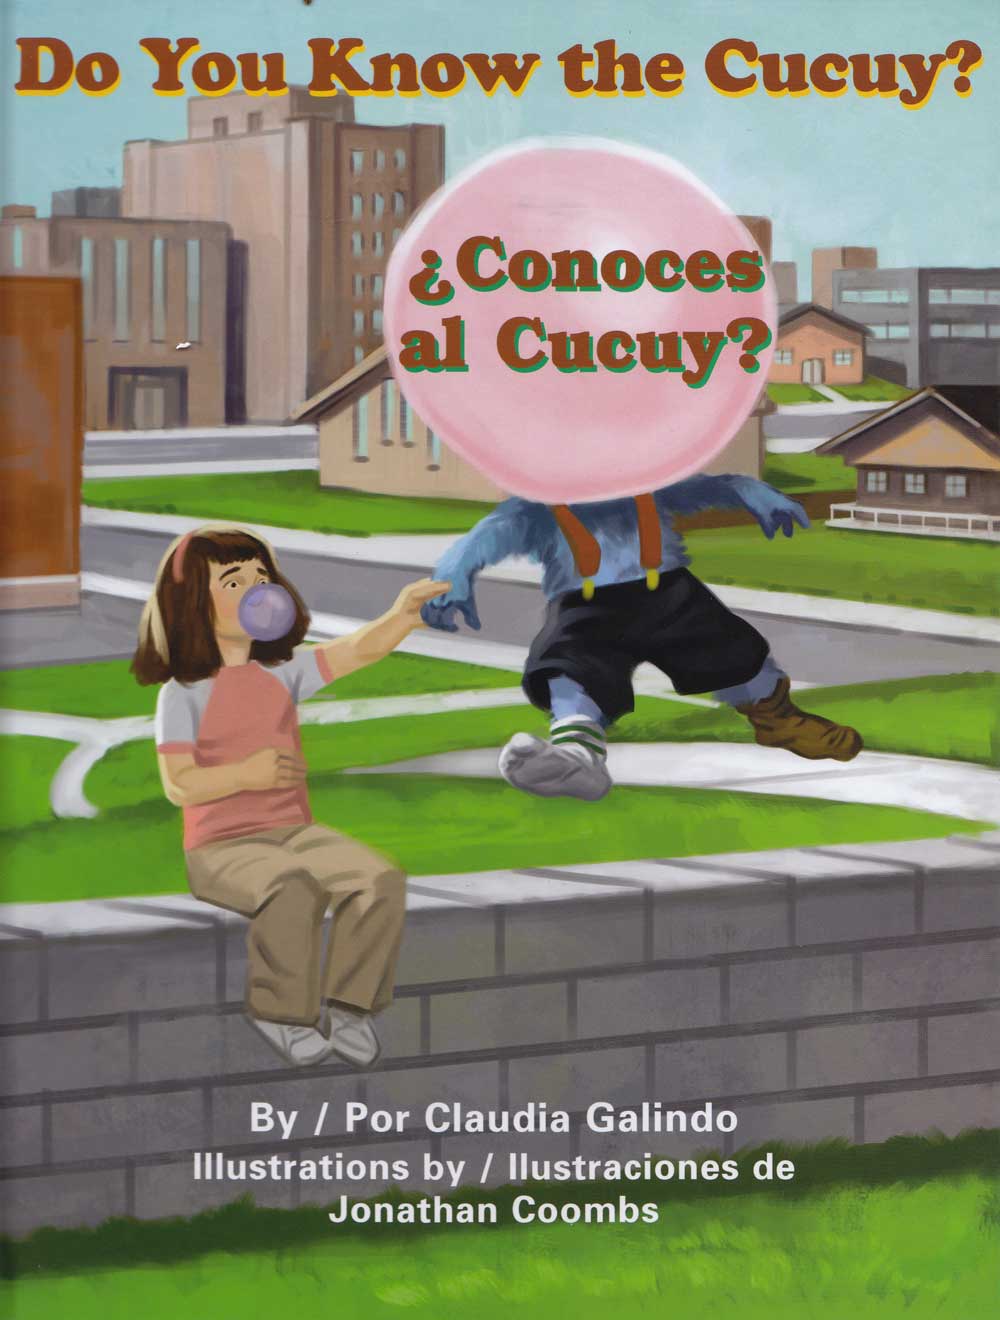 Conoces al Cucuy - Do You Know the Cucuy, Del Sol Books